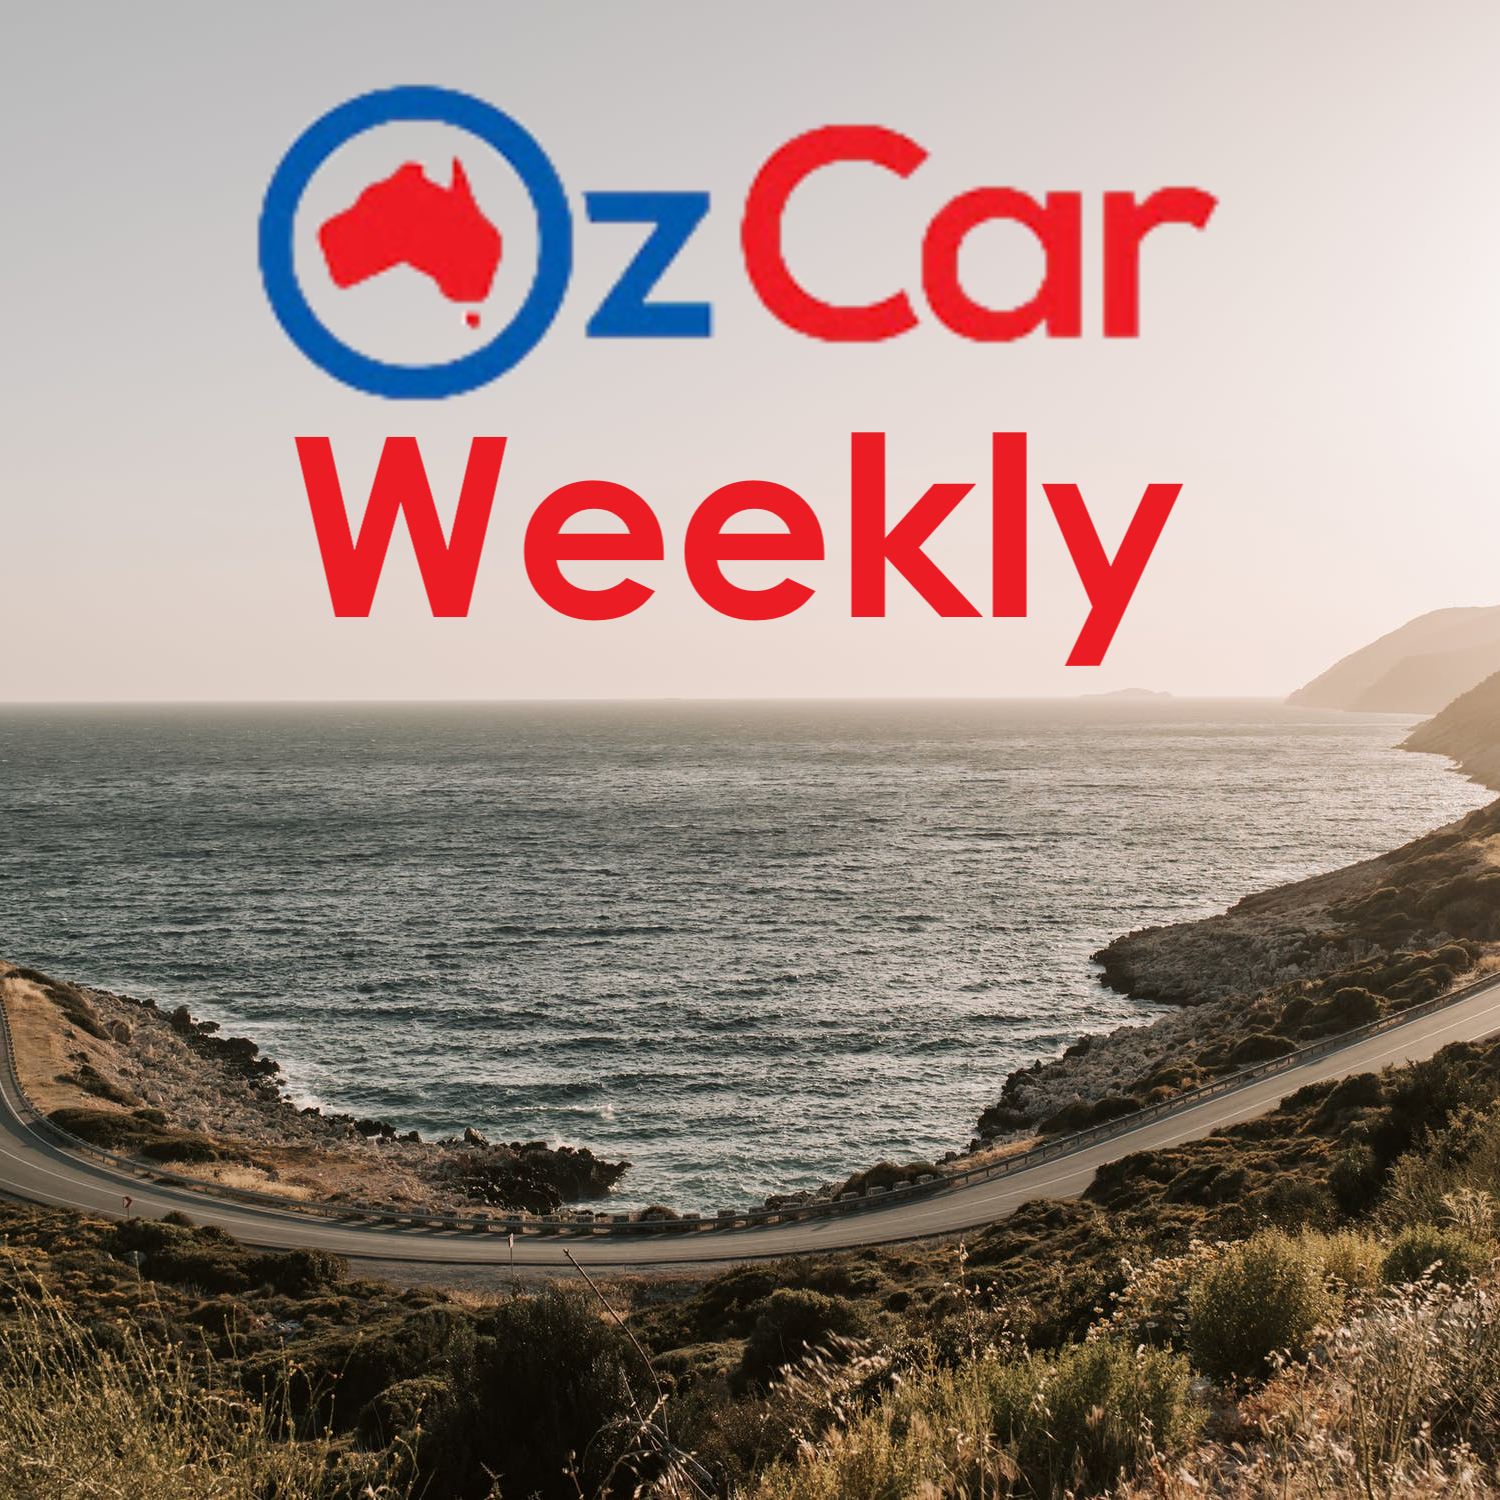 OzCar Weekly Episode 13